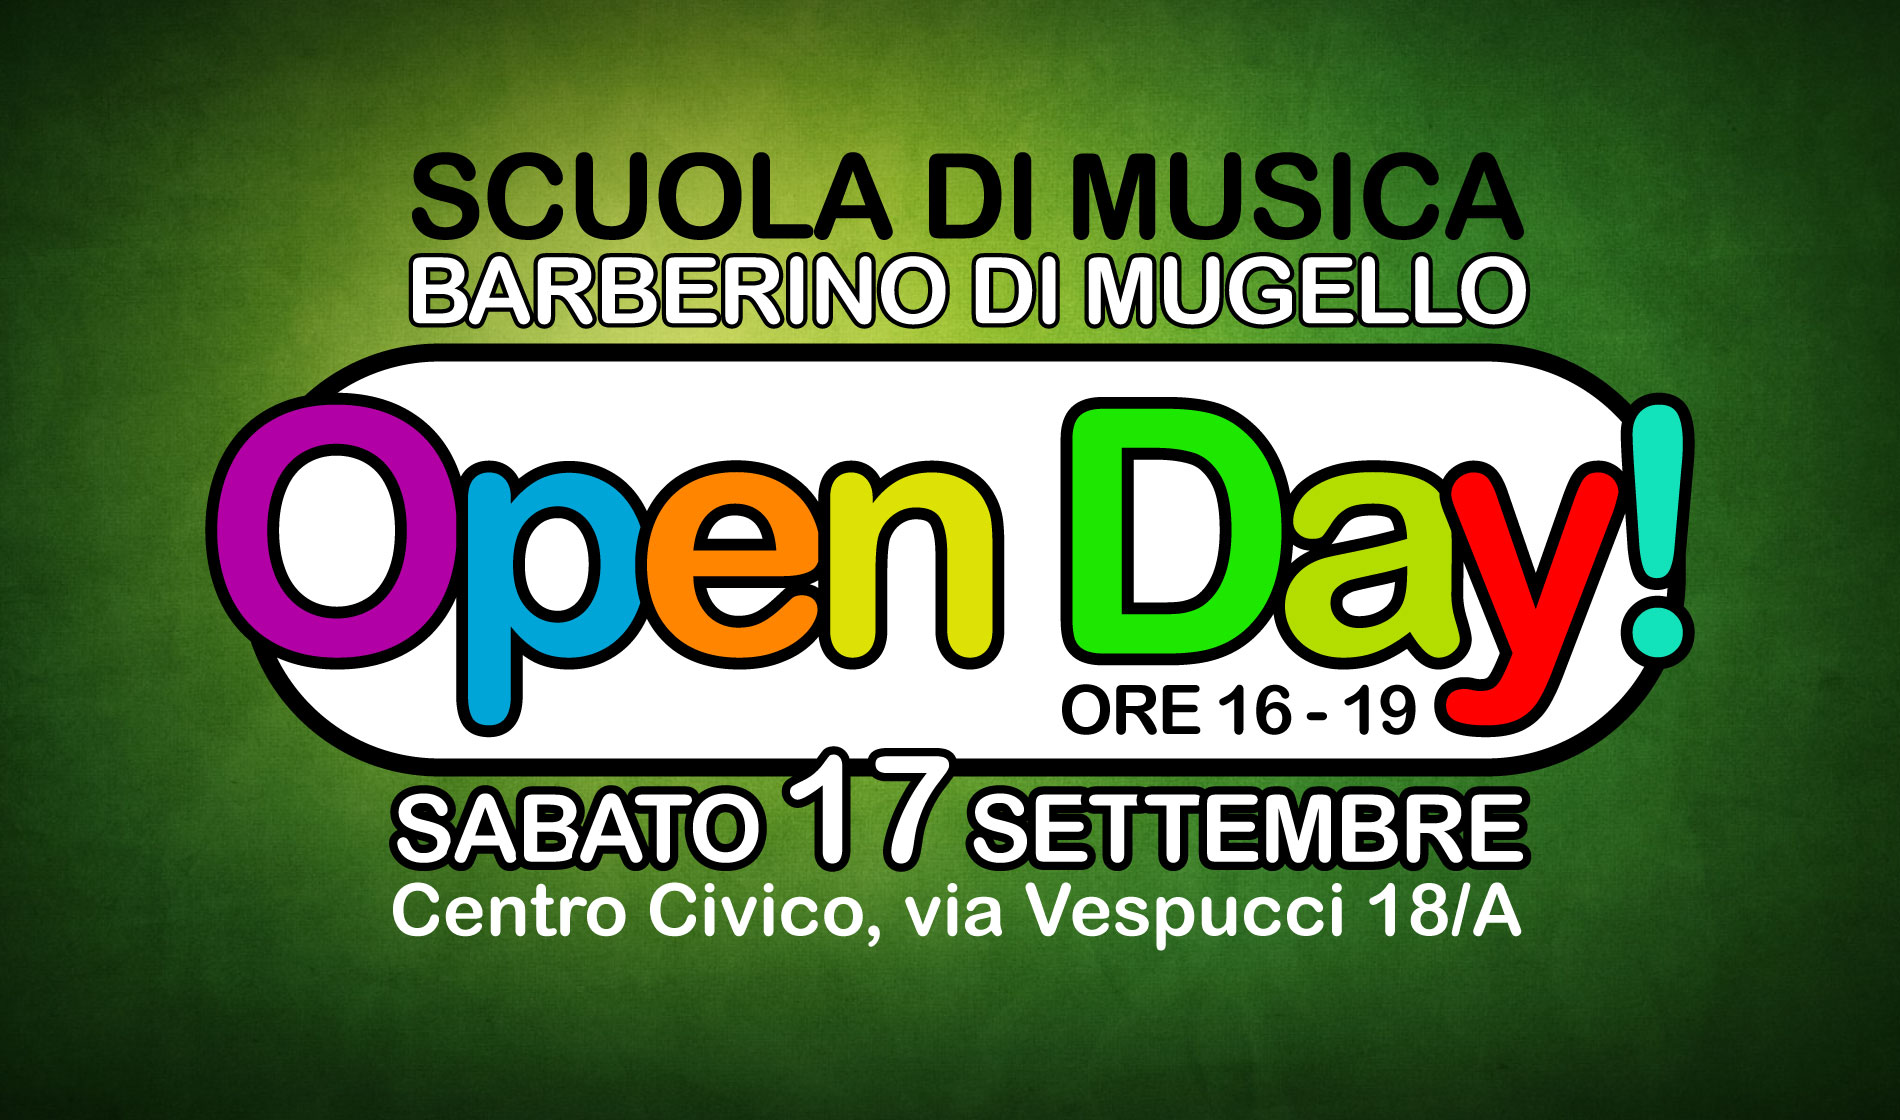 Open Day Barberino di Mugello 17 Settembre 2016 ore 16-19